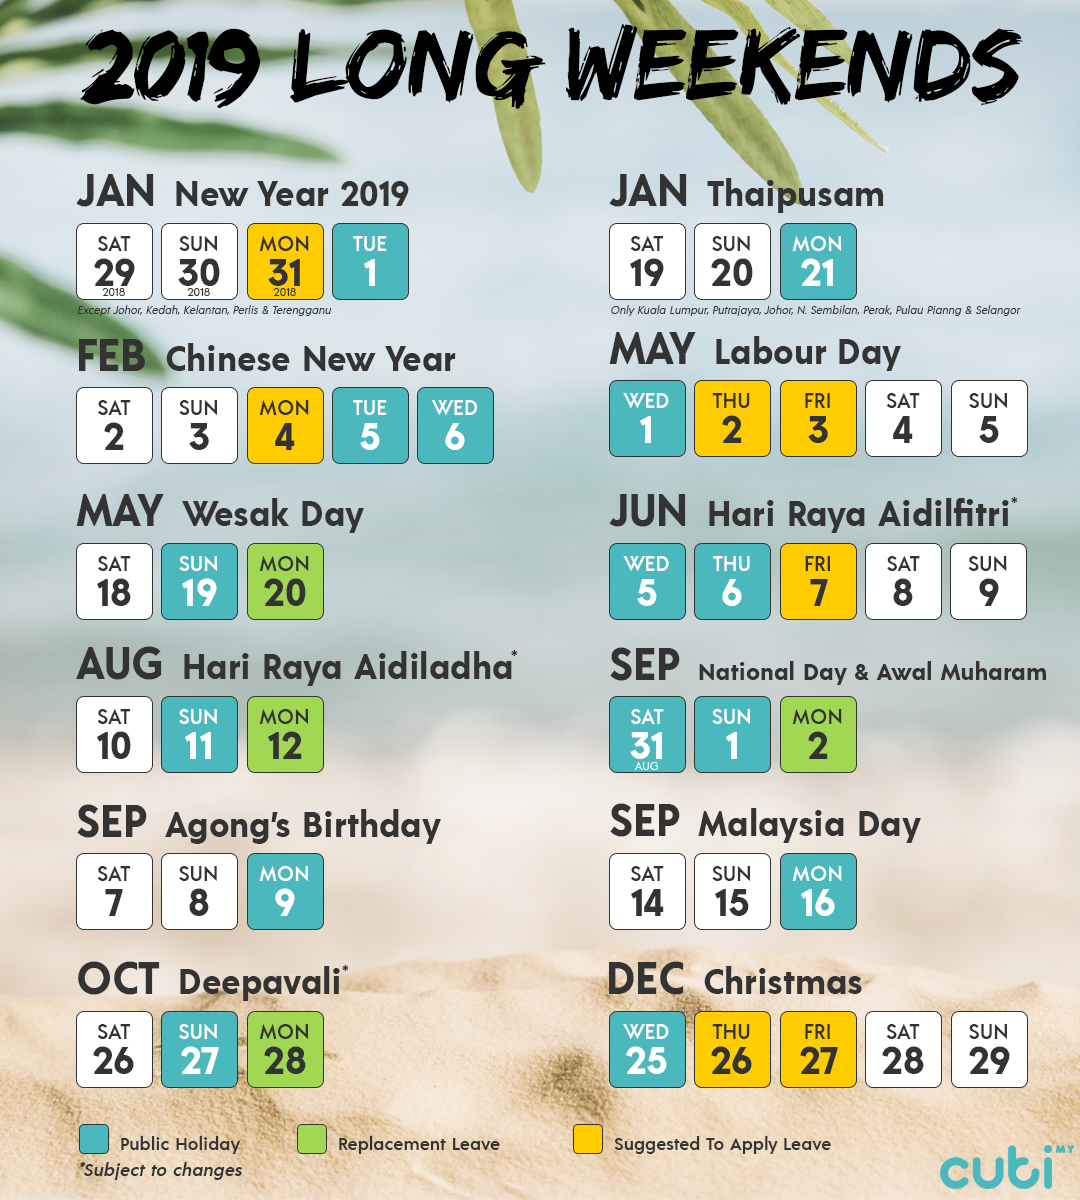 Kalendar 2019 Malaysia serta cuti umum | Arnamee blogspot